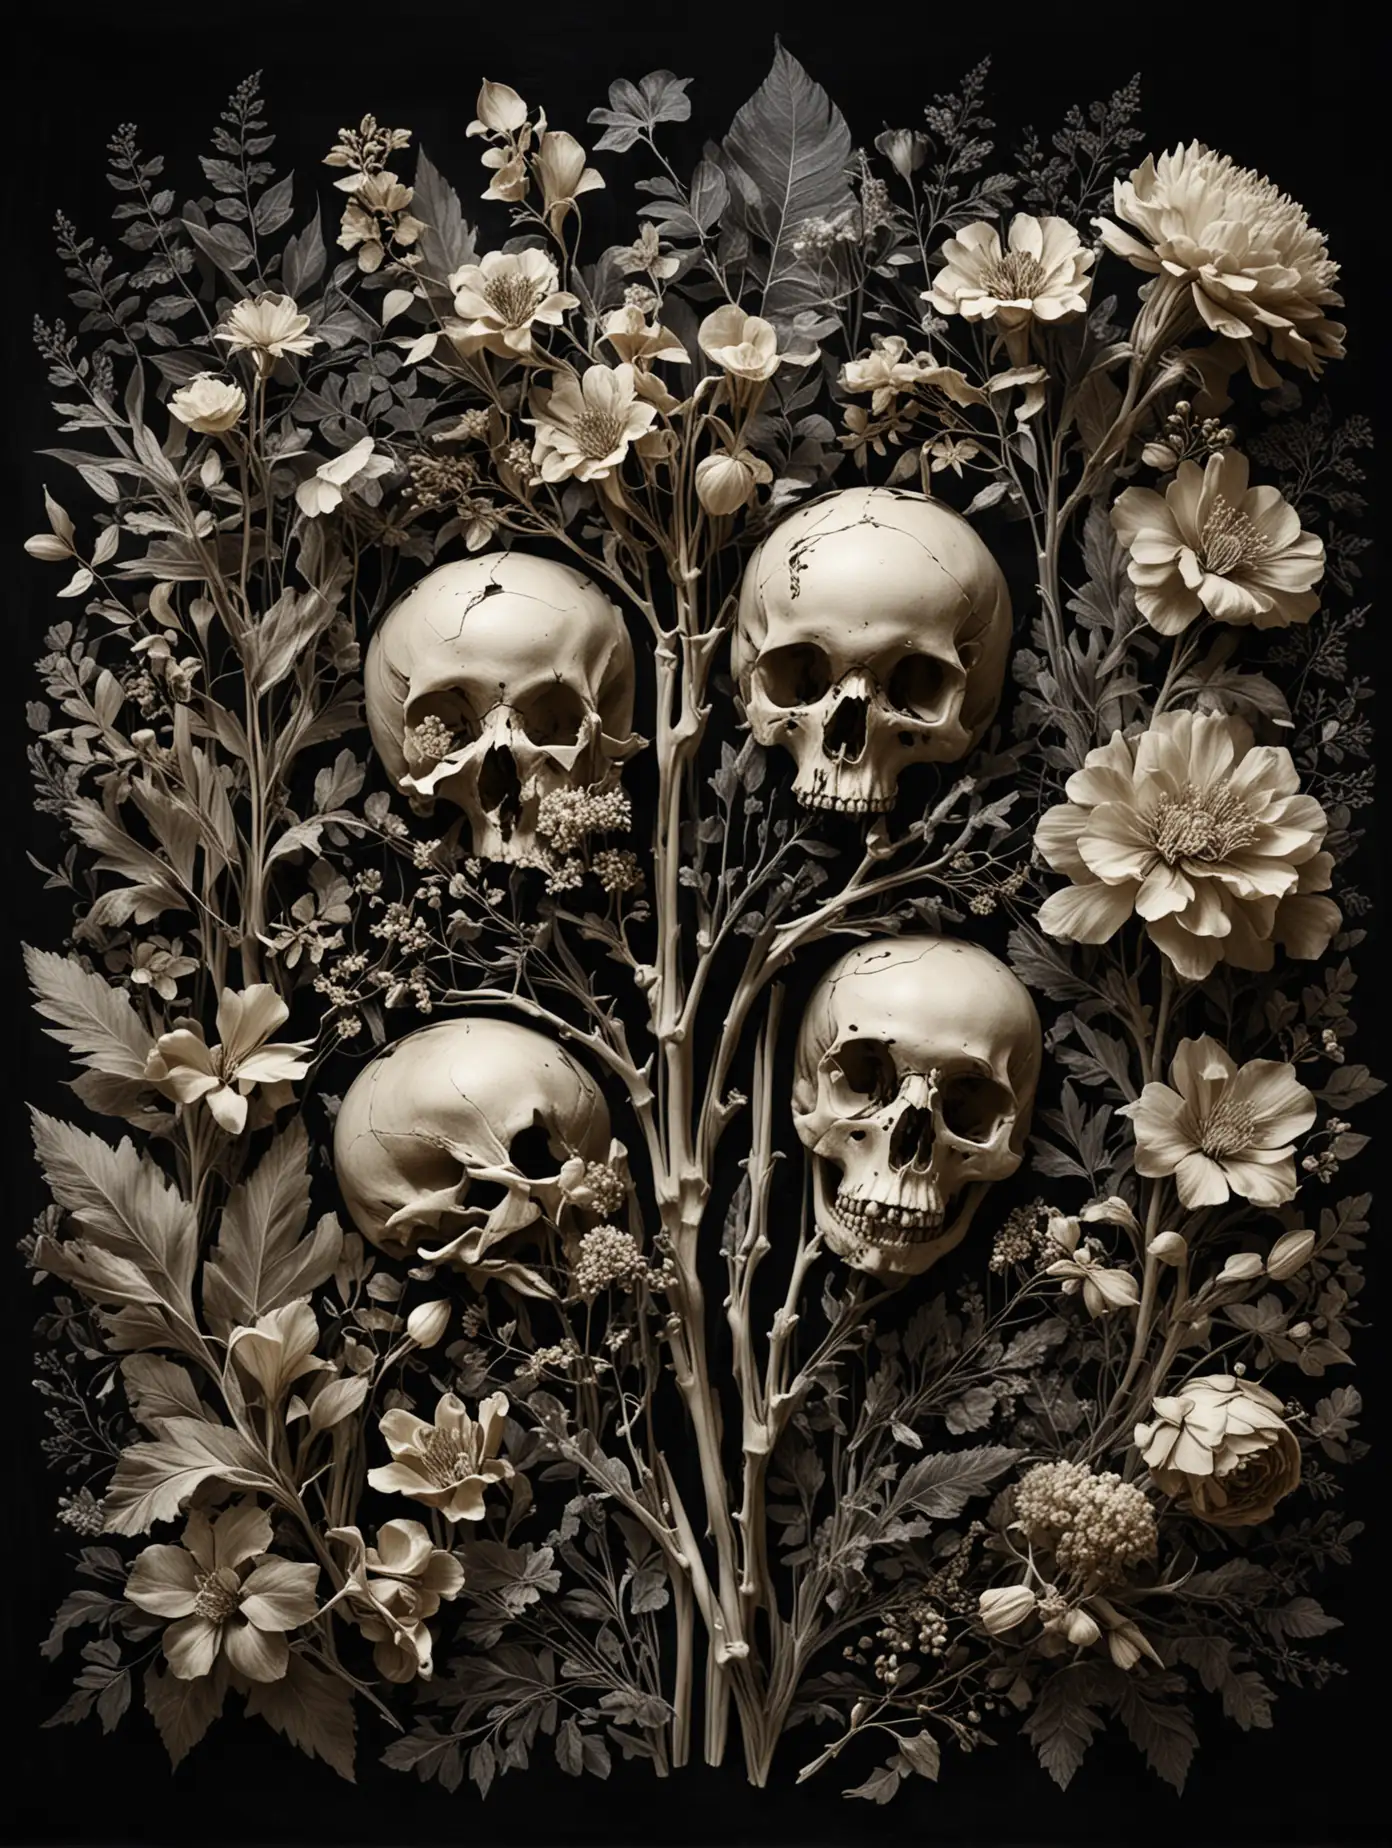 композиция , цветы -  сделанных из костей, проявленных через рентген. темный фон, реалистичность